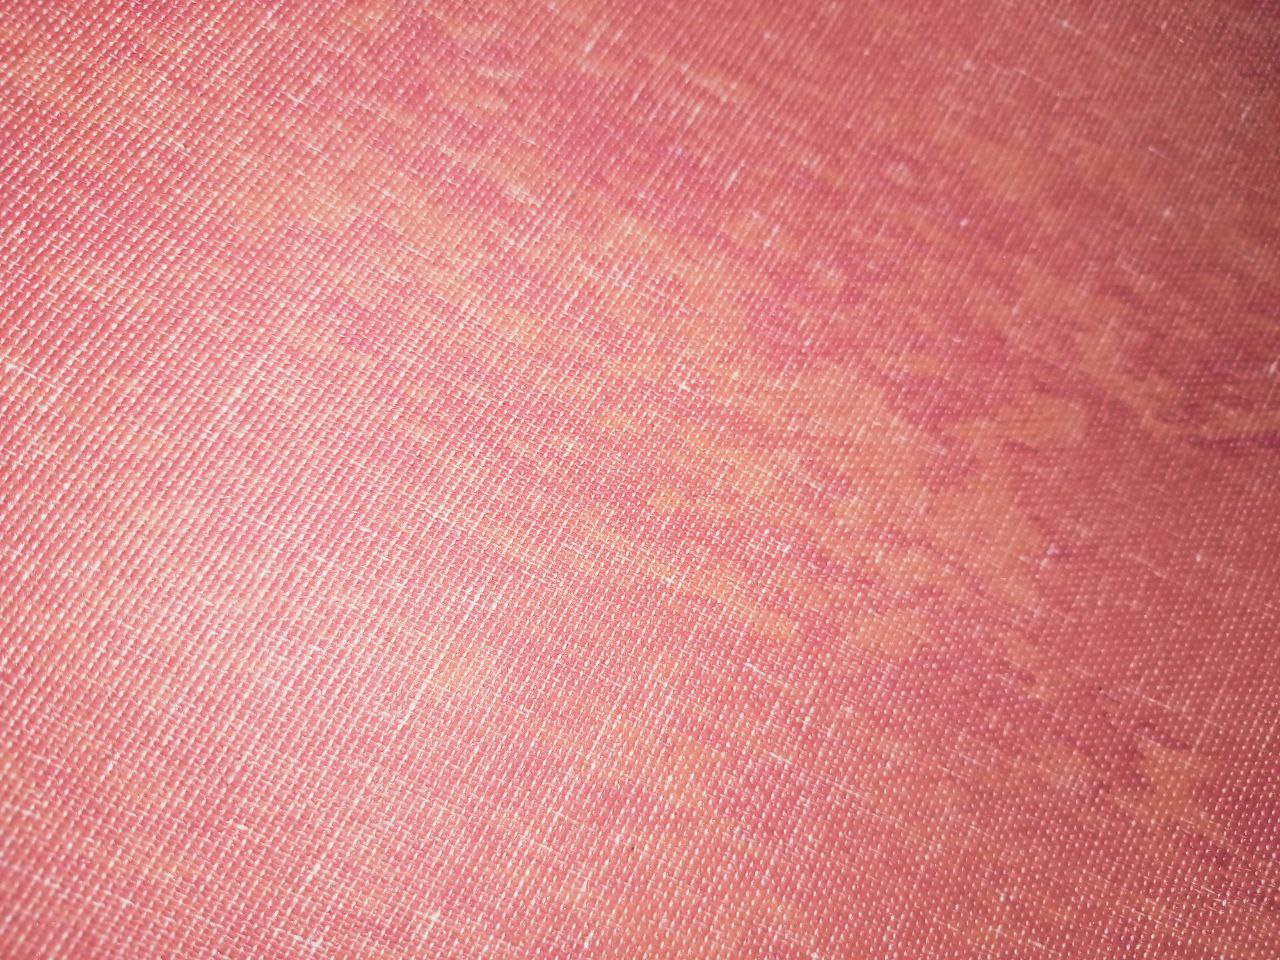 коврик для йоги каучук розово-оранжевый с хлопком